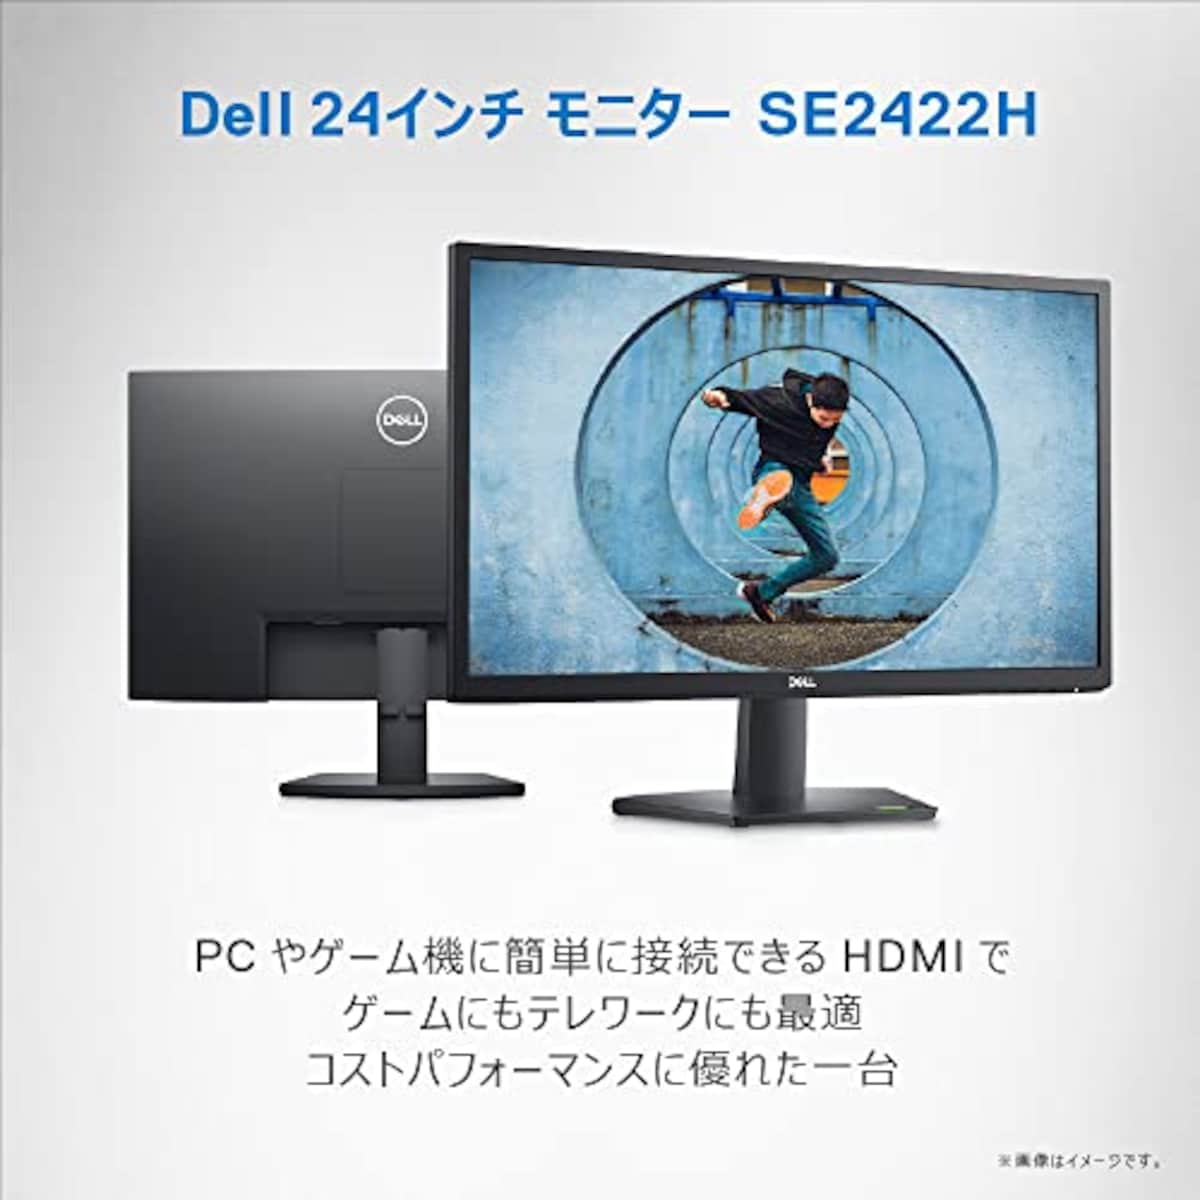  【Amazon.co.jp限定】Dell SE2422H 23.8インチ モニター ディスプレイ (3年間交換保証/FHD/VA 非光沢/HDMI D-Sub15ピン/傾き調整/AMD FreeSync)画像2 